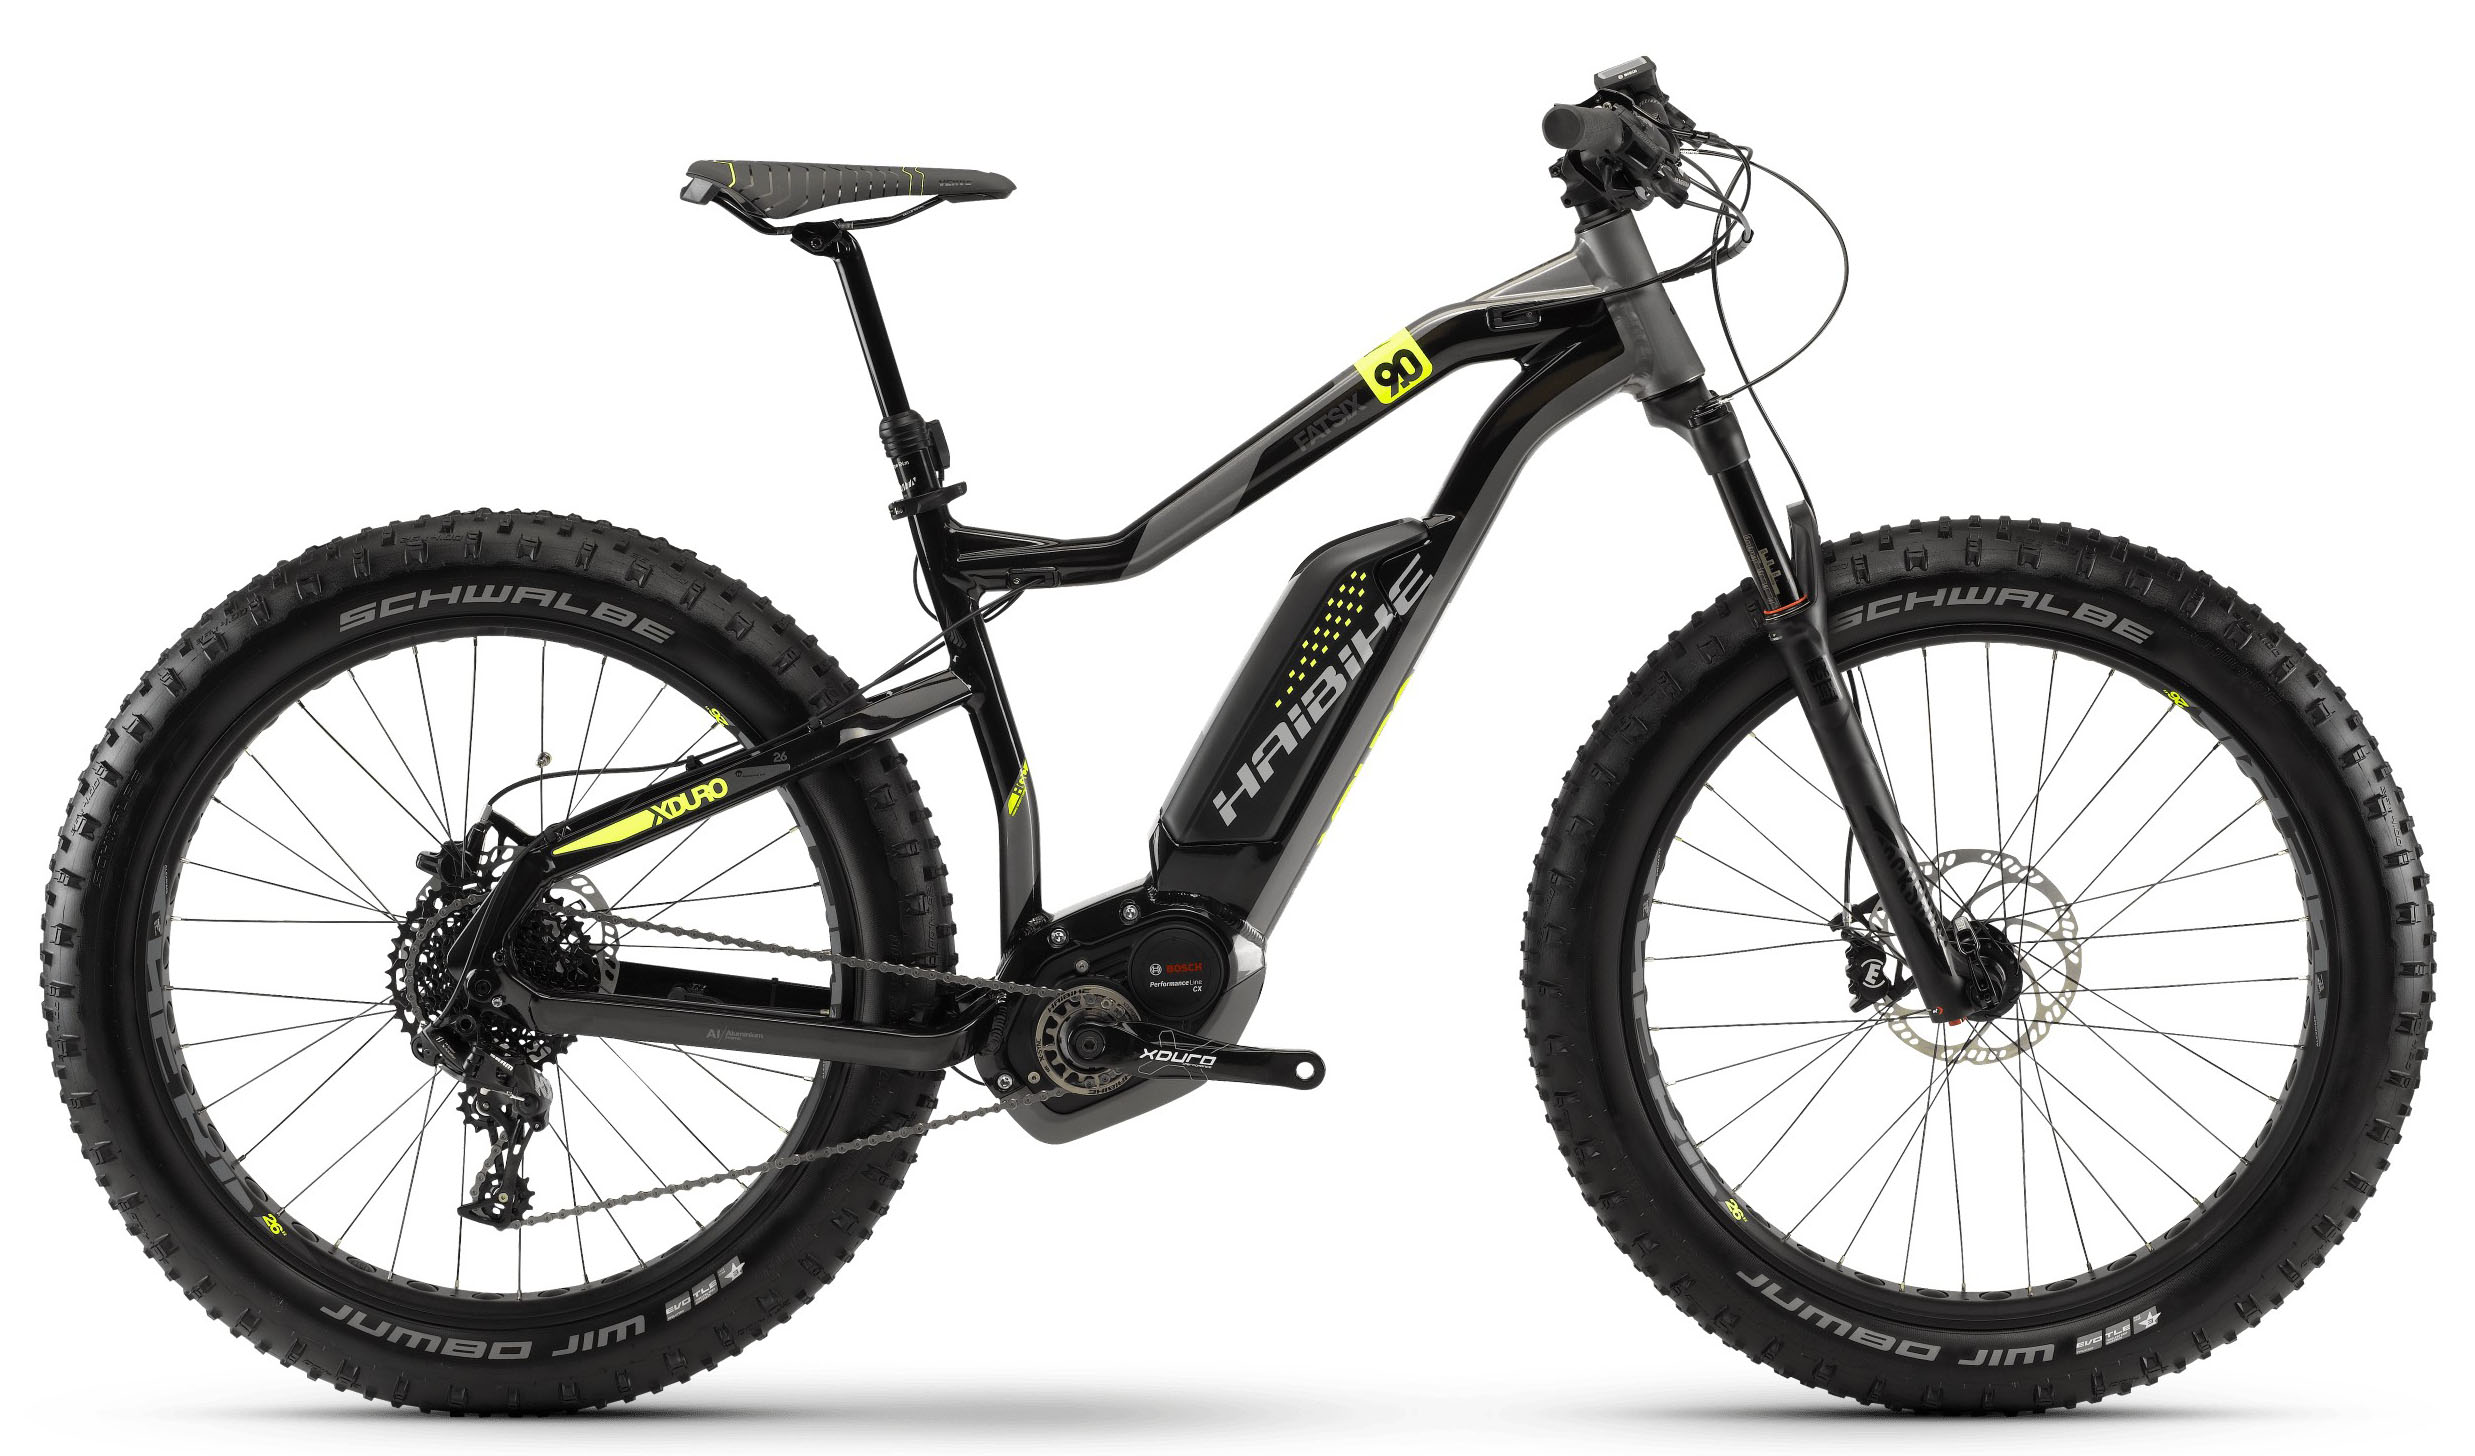  Отзывы о Горном велосипеде Haibike Xduro FatSix 9.0 500Wh 11s NX 2018